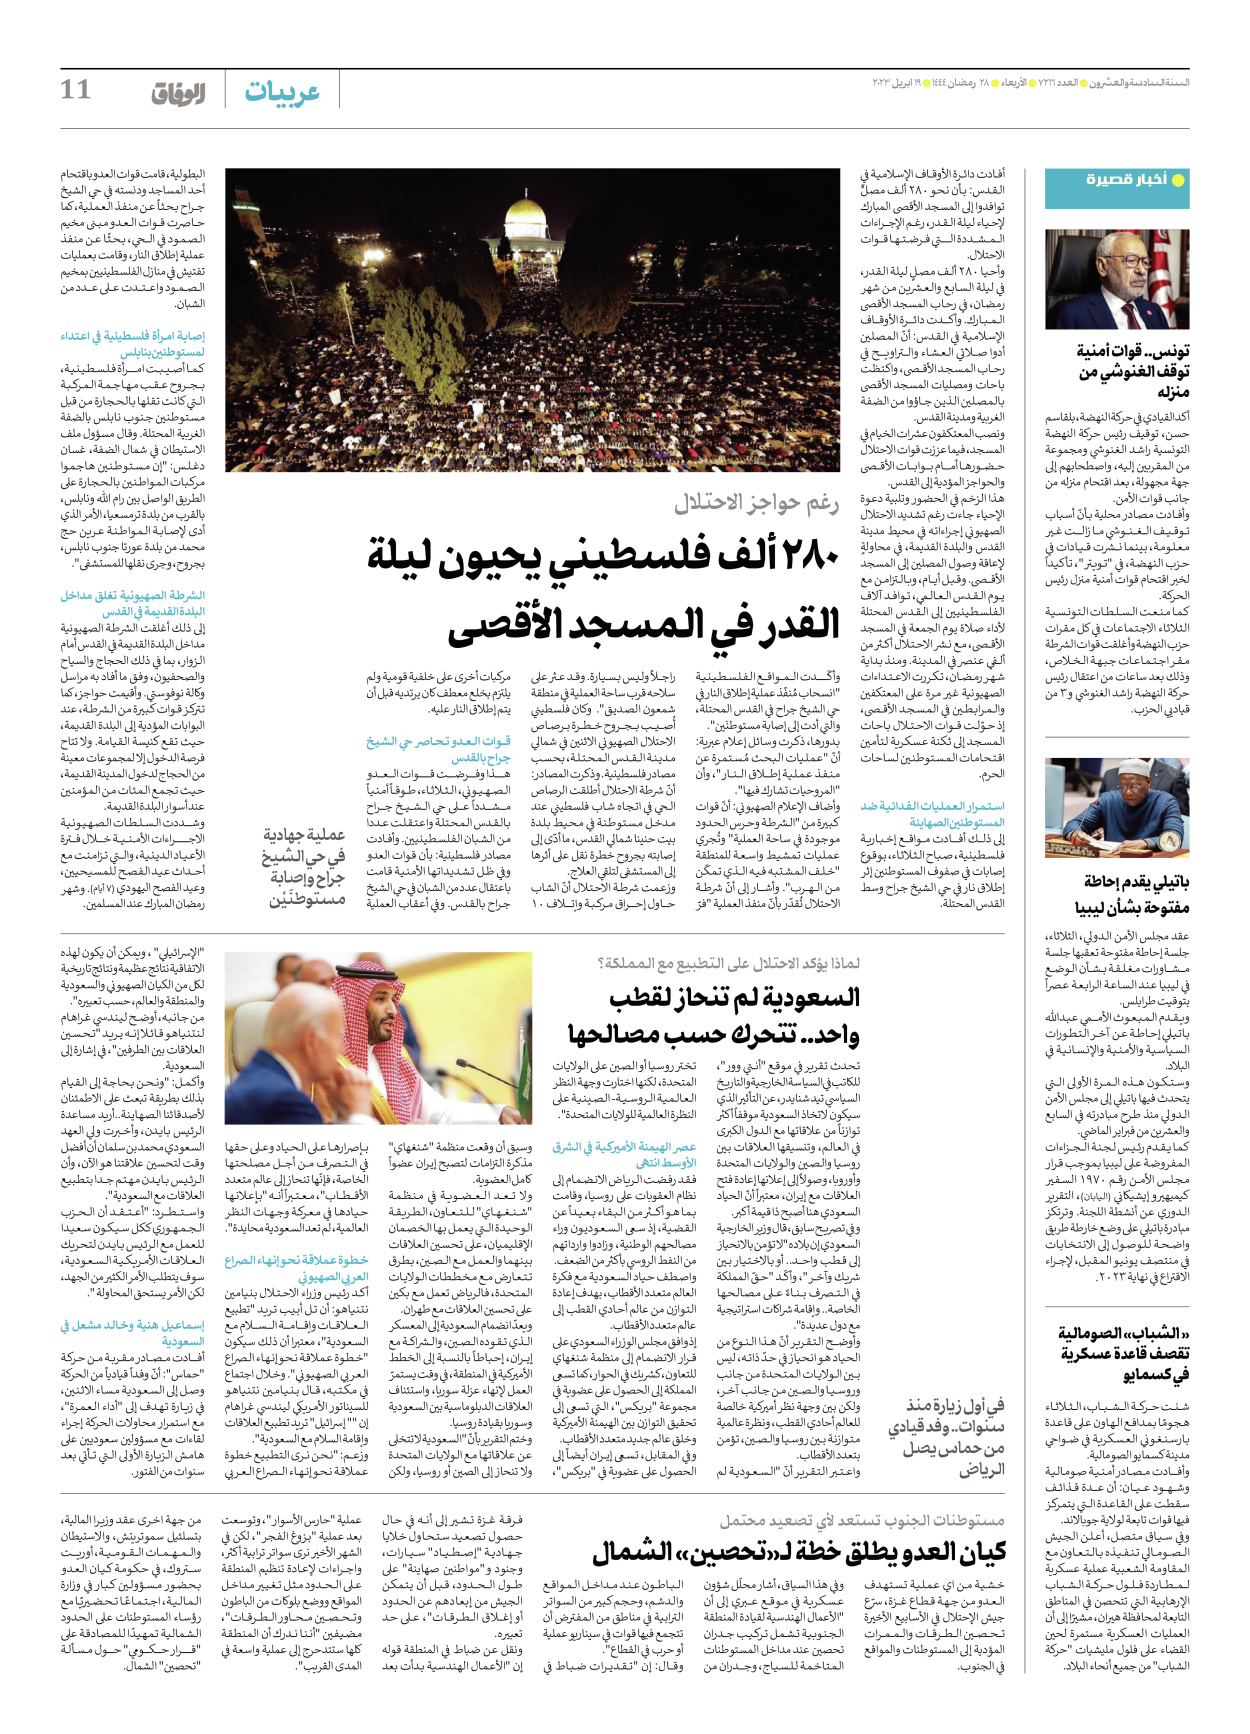 صحیفة ایران الدولیة الوفاق - العدد سبعة آلاف ومائتان وستة عشر - ١٩ أبريل ٢٠٢٣ - الصفحة ۱۱